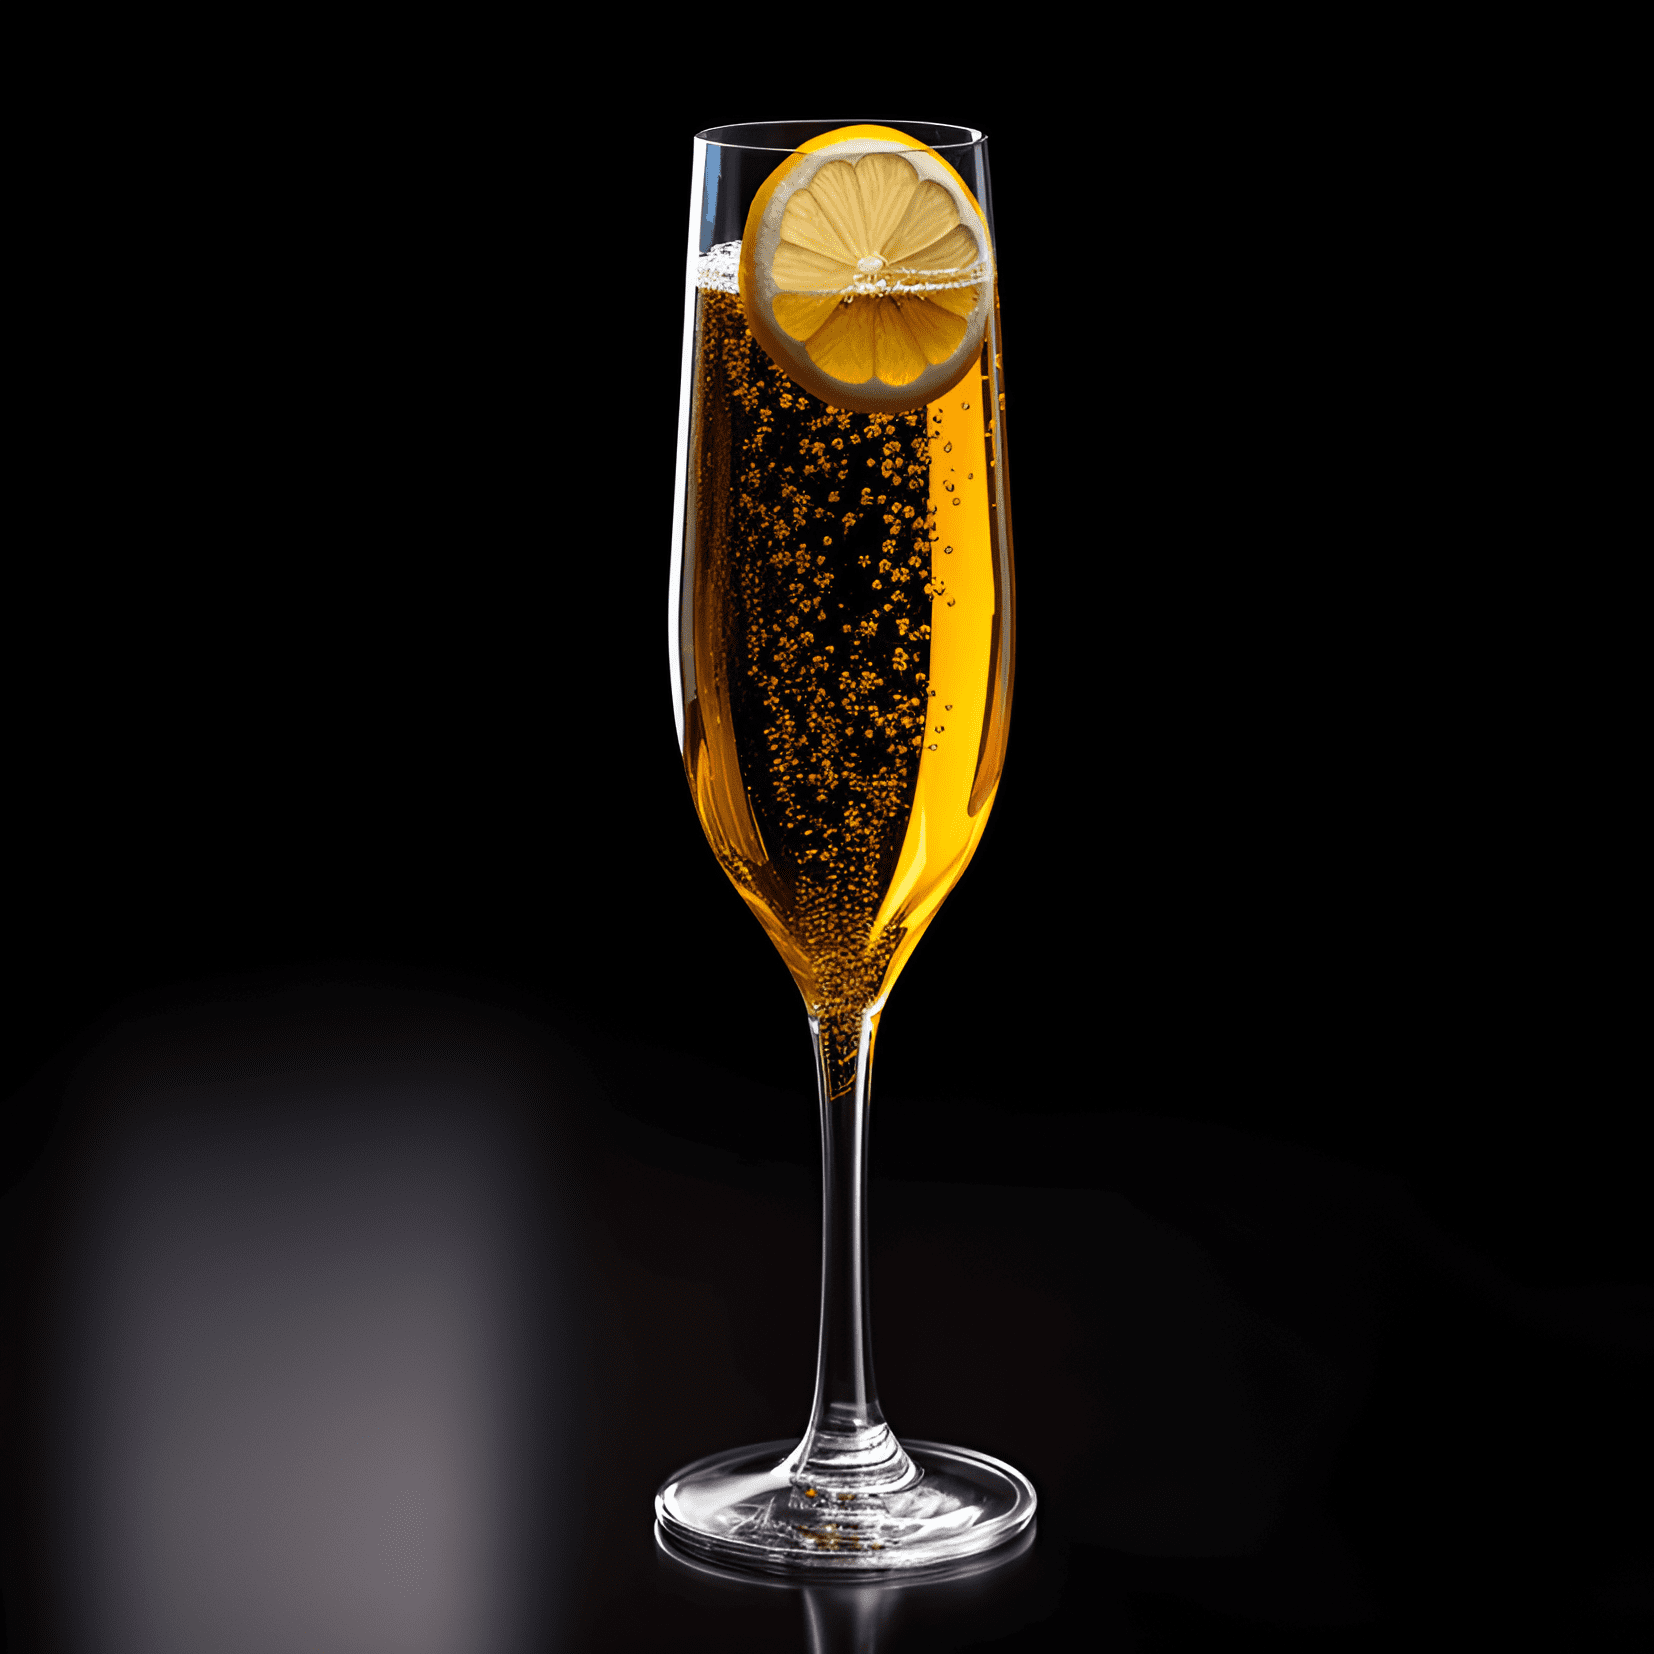 French 95 Cóctel Receta - El French 95 tiene un sabor suave y rico con un toque de dulzura del jarabe simple y un toque de acidez del jugo de limón. El bourbon agrega calidez y profundidad, mientras que el champán aporta un final ligero y efervescente.